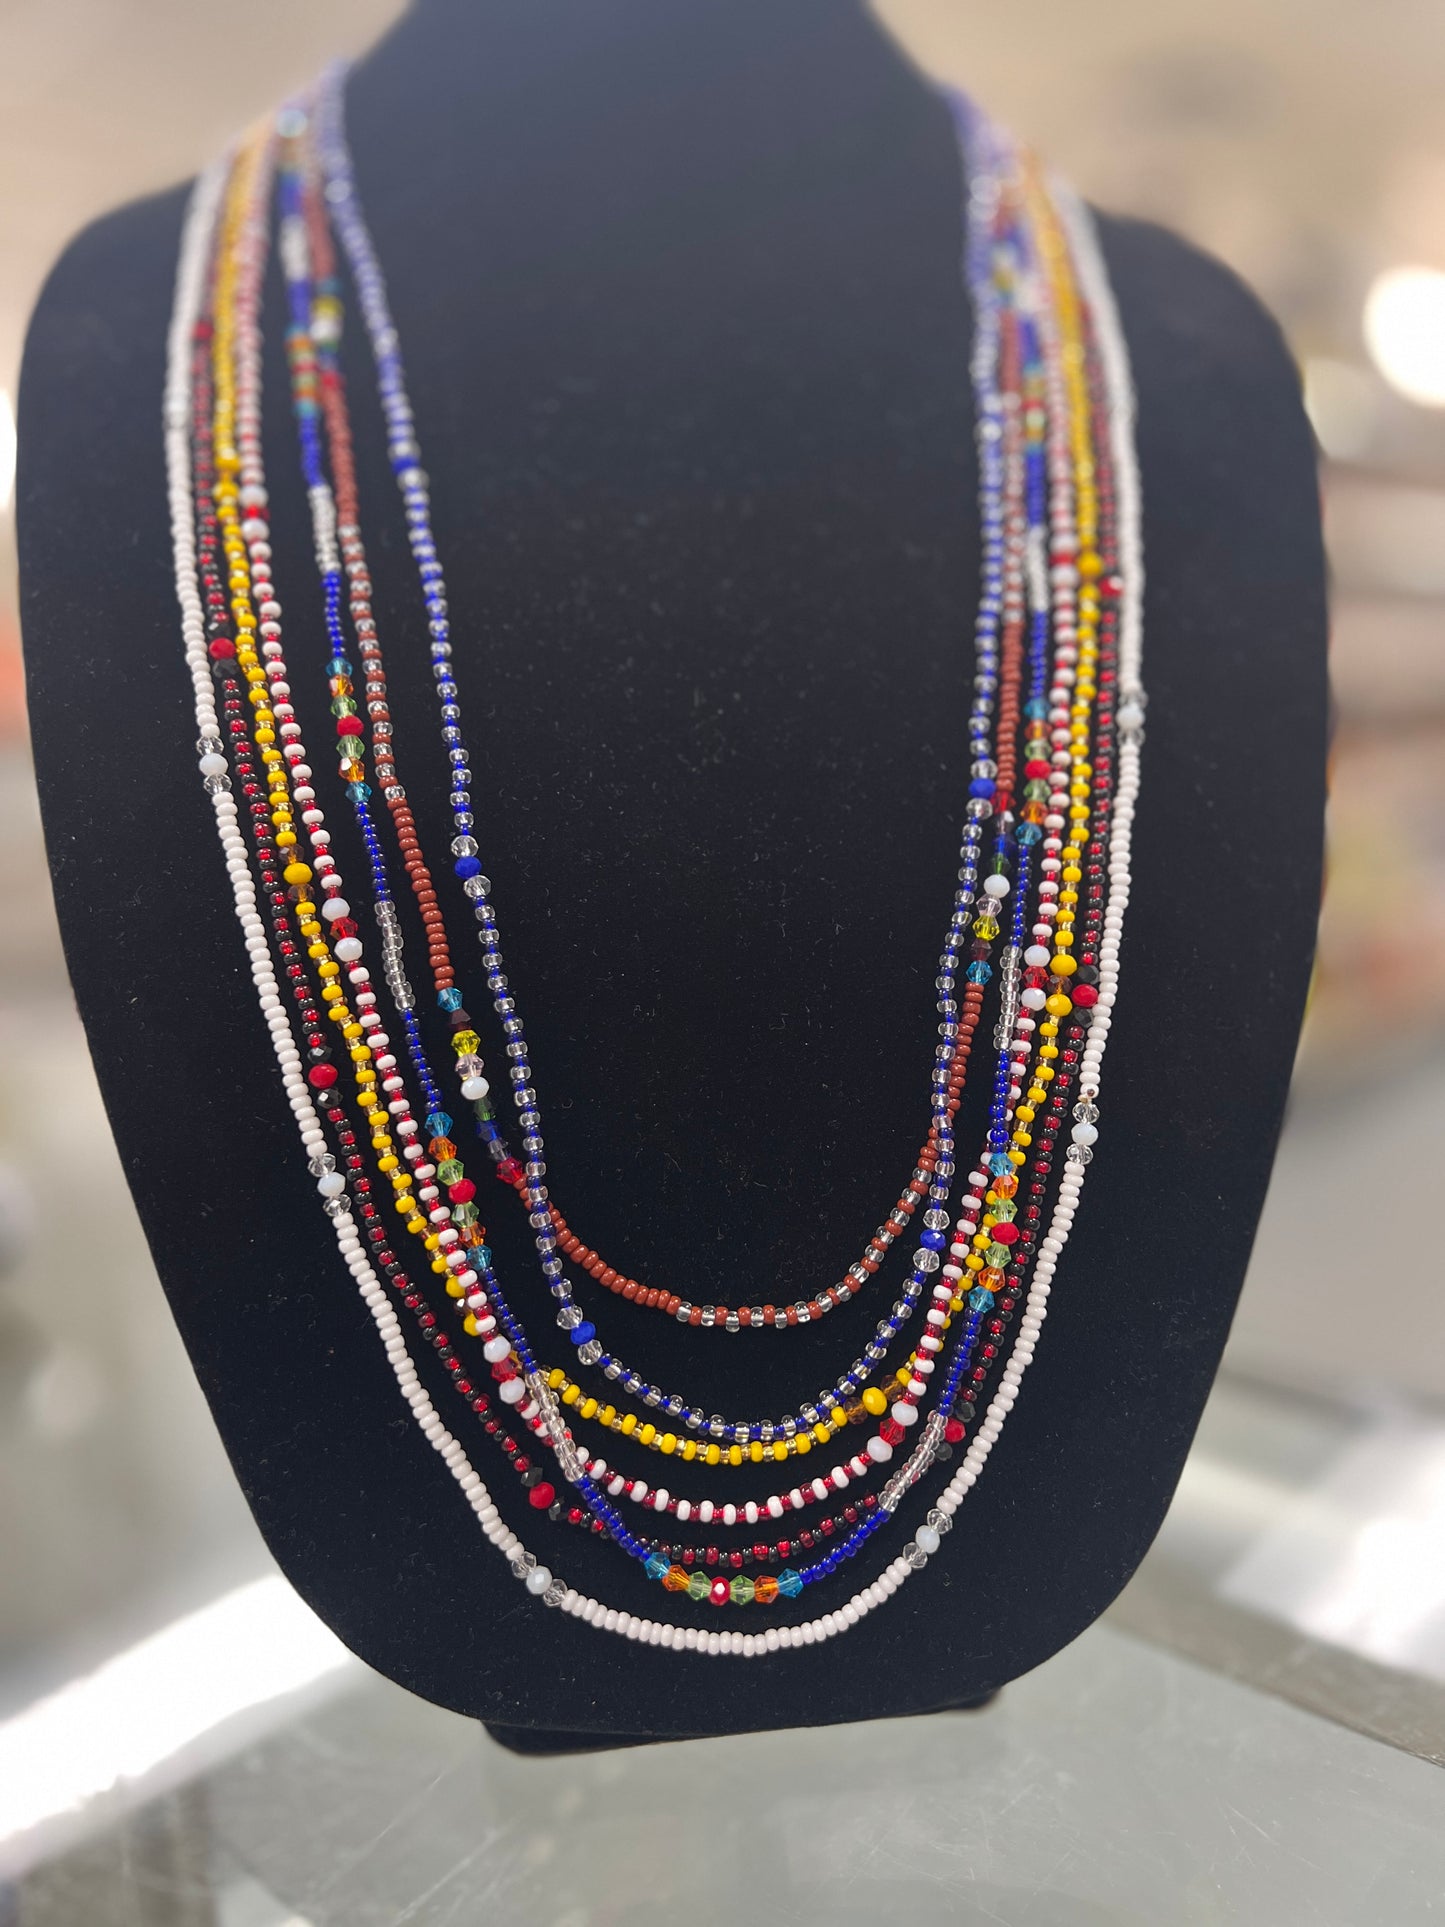 Collares de Santo Para Gala / Elekes or Beaded Necklace For Gala